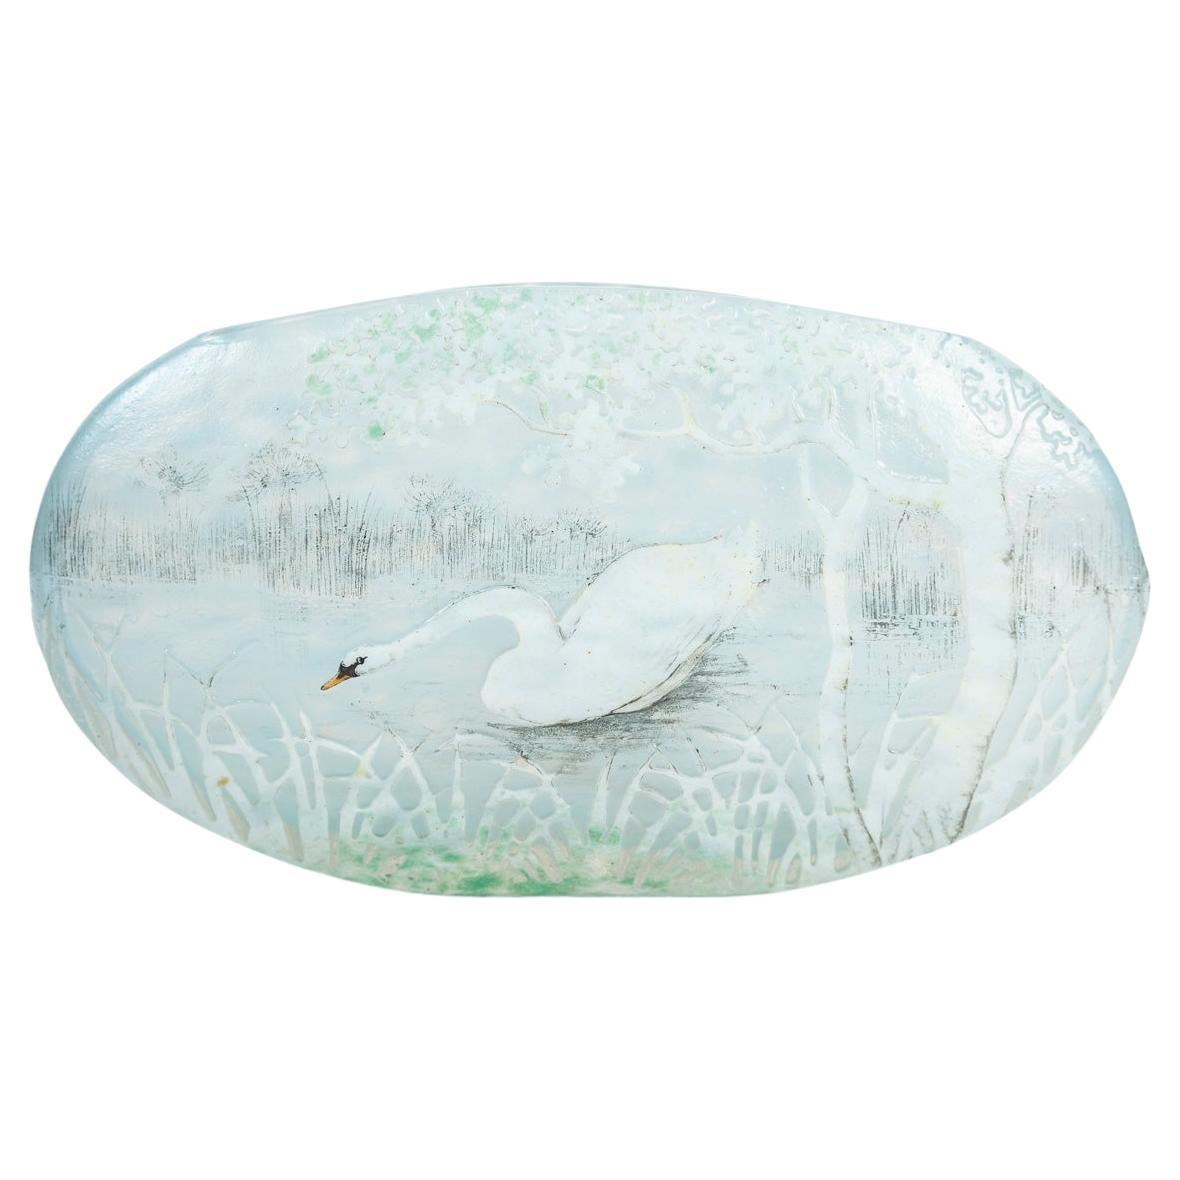 Daum Nancy - Rare Jardinière-shaped Vase With Swan Decor, Art Nouveau Glass For Sale